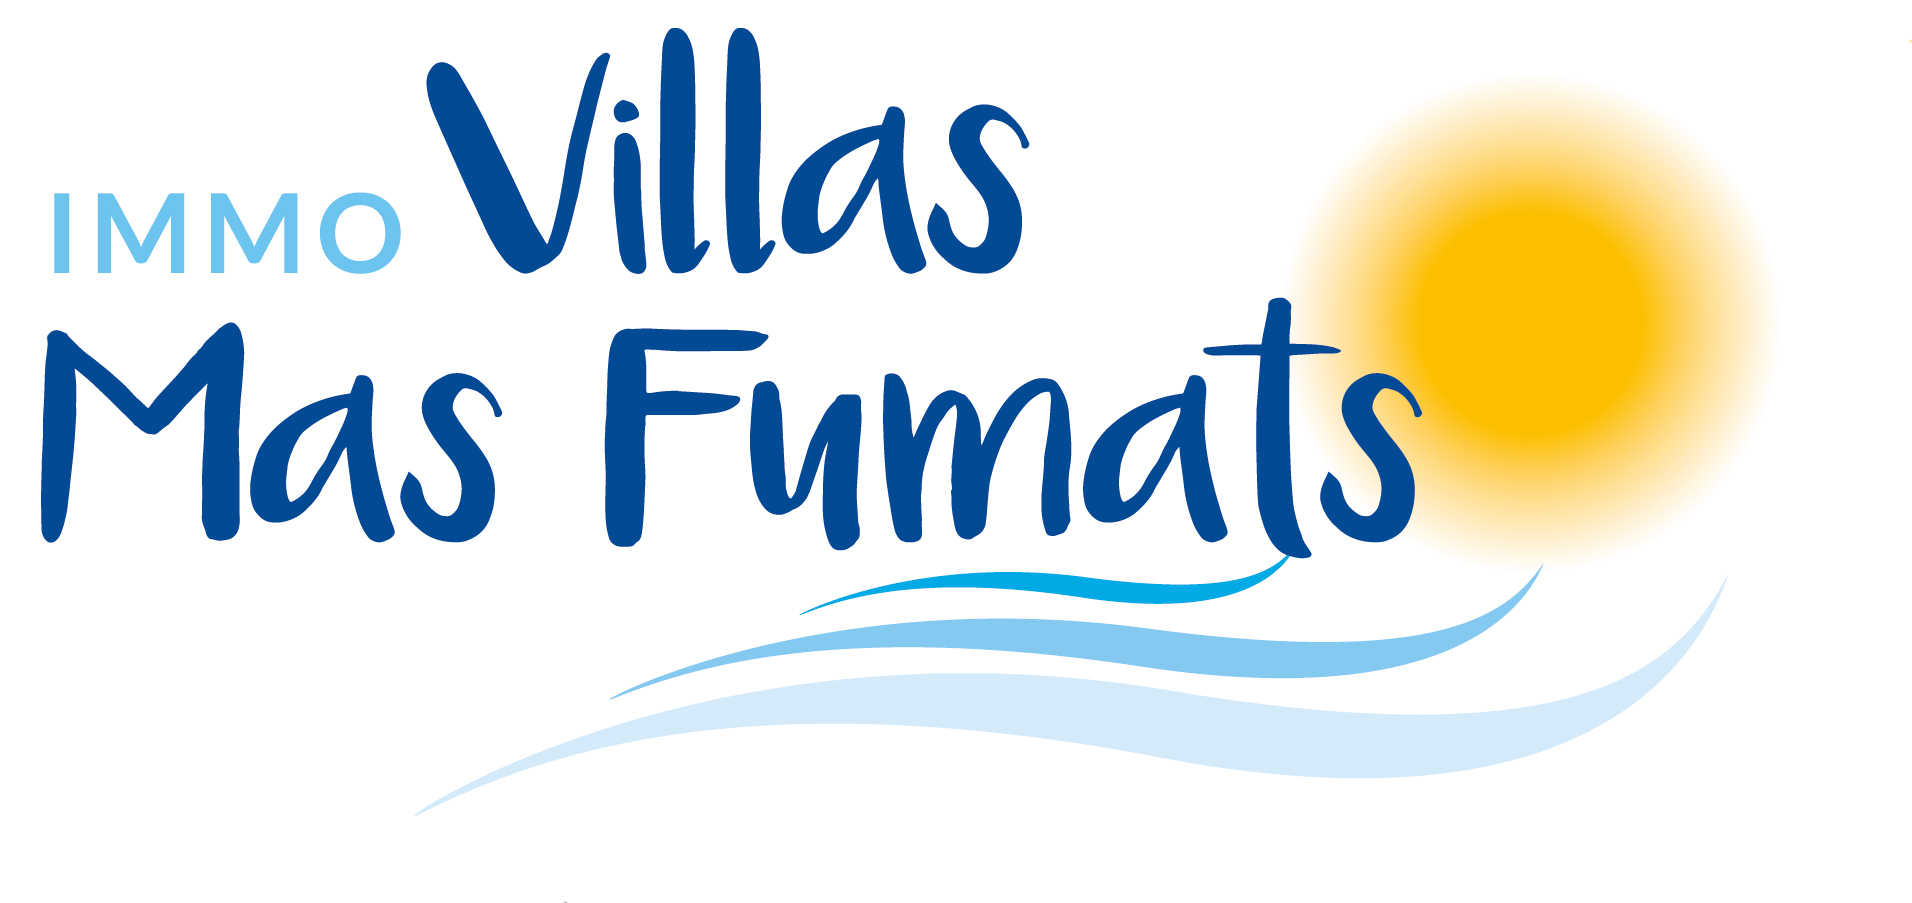 Агентство недвижимости Immo Villas Mas Fumats - Управление недвижимостью